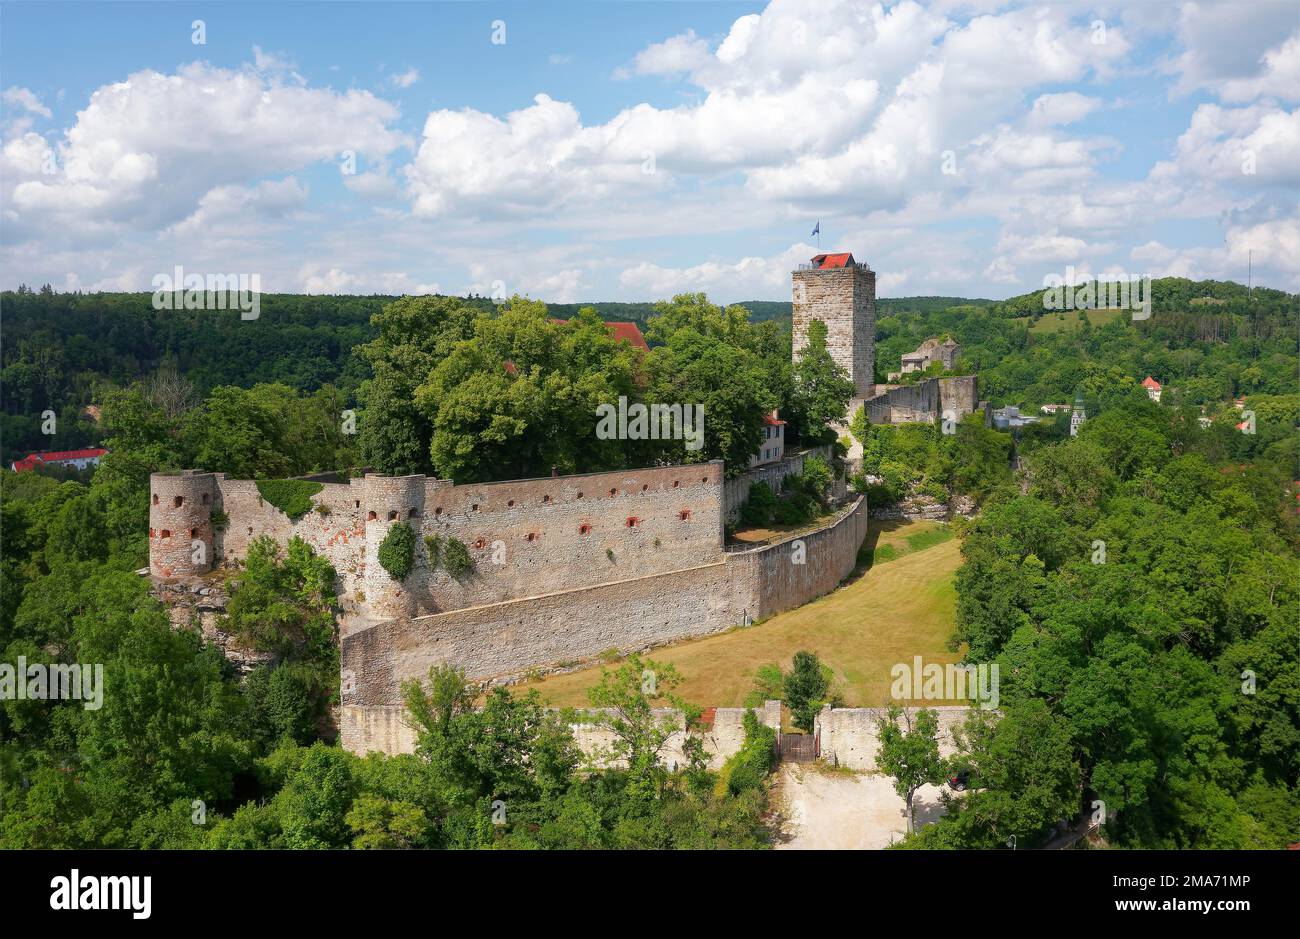 Luftaufnahme, Schloss Pappenheim, 1140 erbaut, Spornburg, Outer bailey, Eine der bedeutendsten mittelalterlichen Burgruinen in Bayern, im äußeren bailey mit Stockfoto